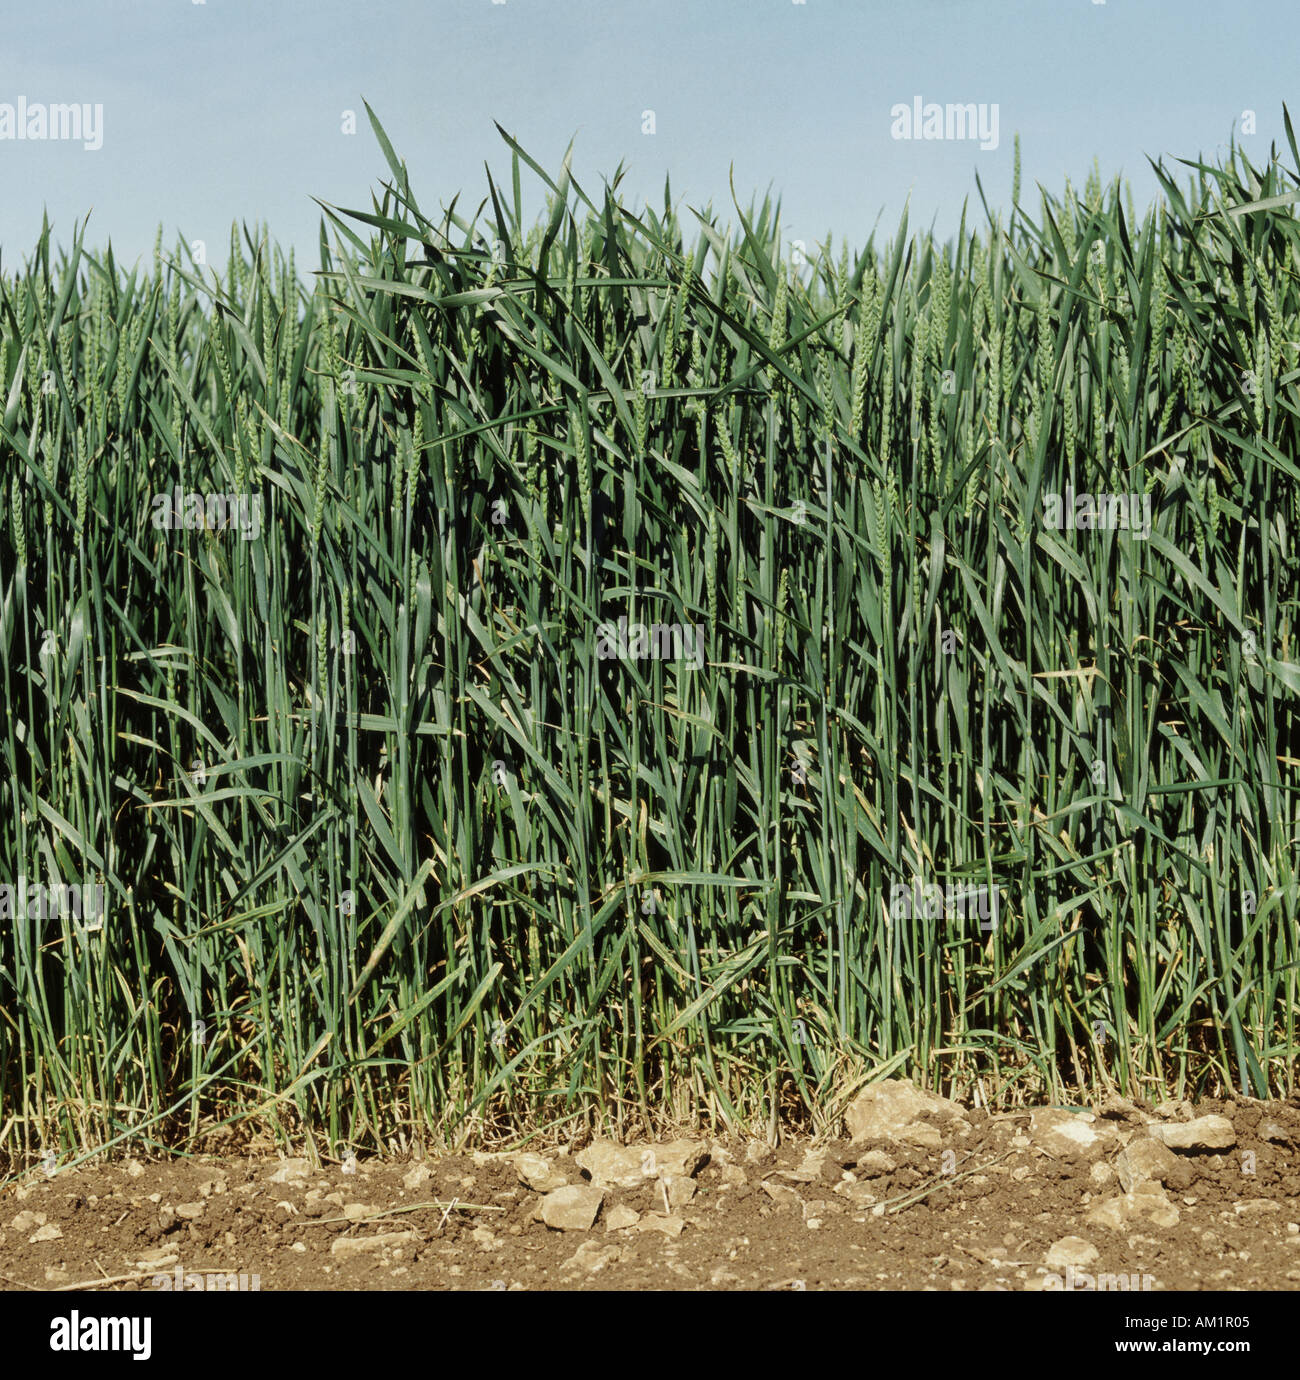 Unripe wheat crop in ear Triticum aestivum Stock Photo